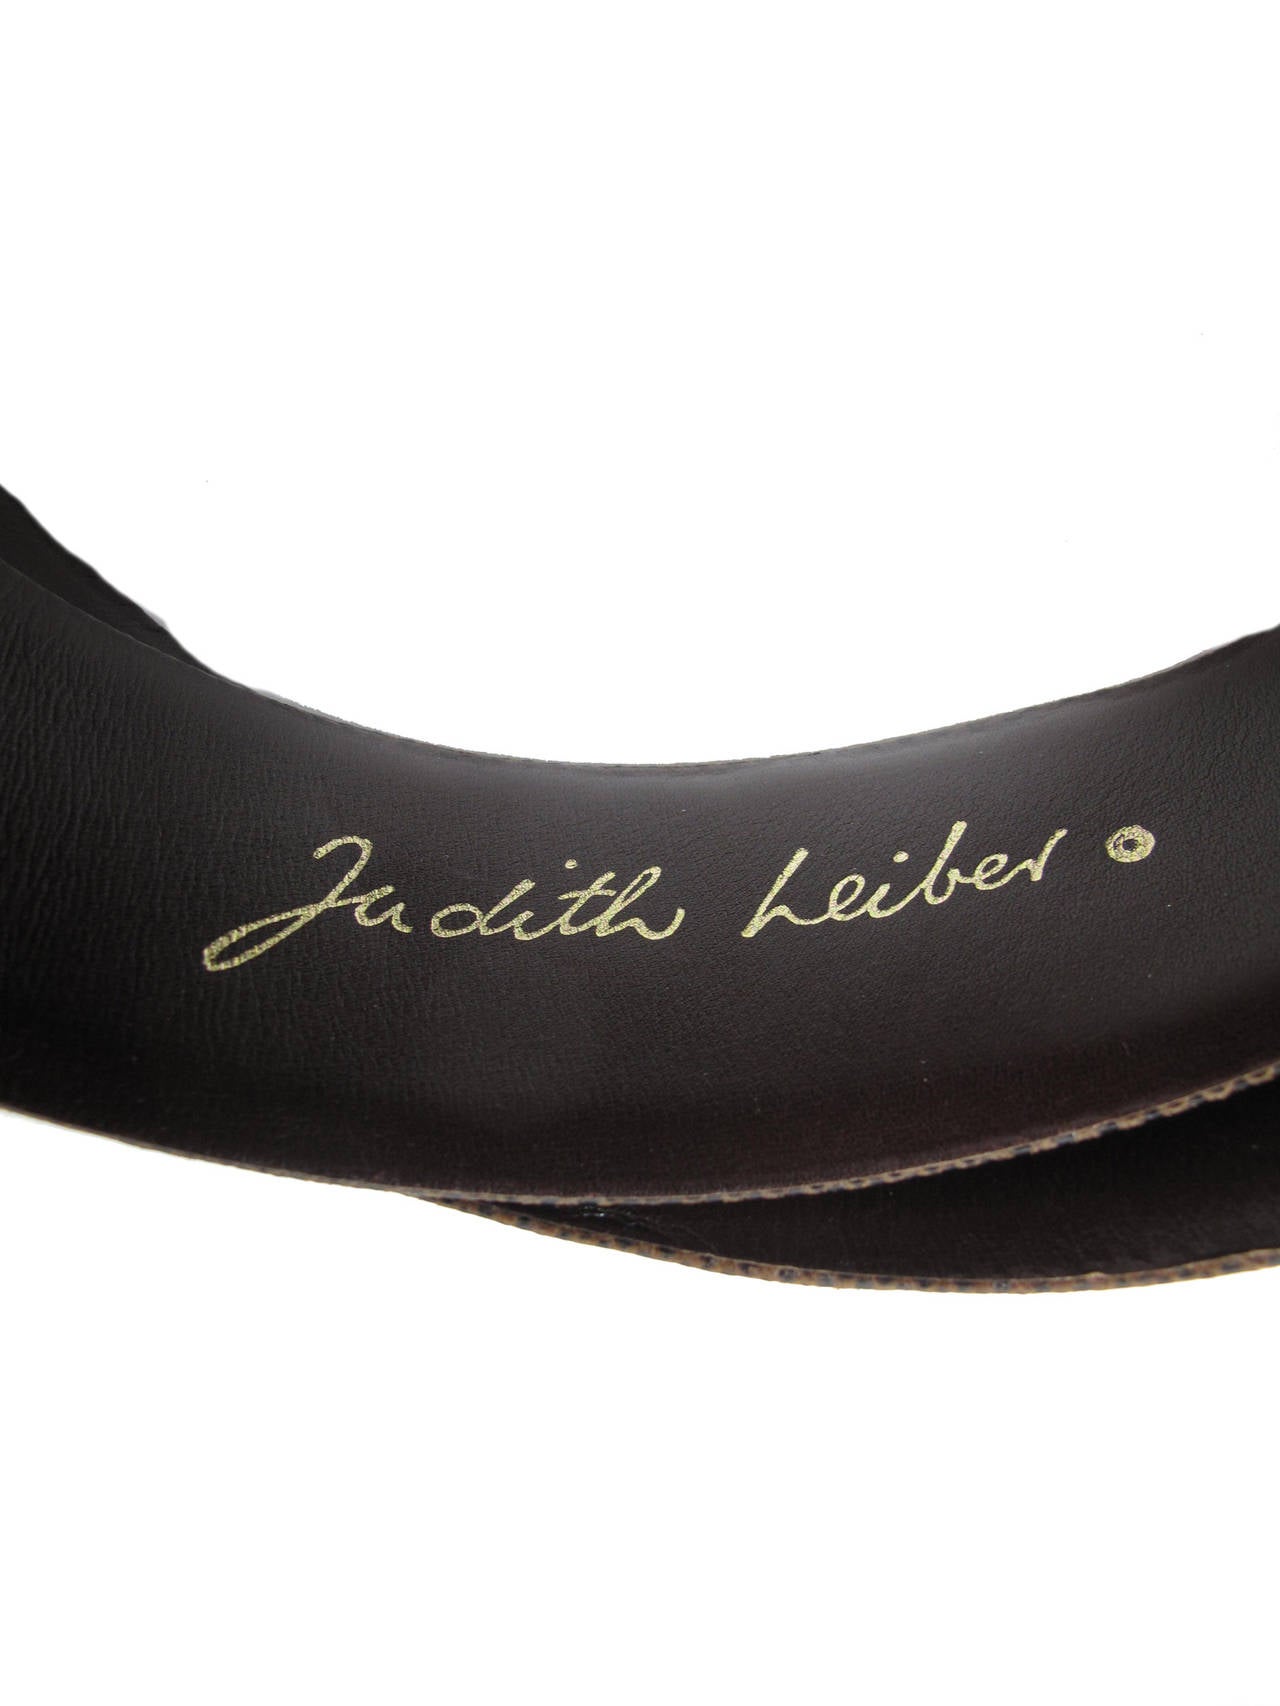 Judith Leiber Brown Lizard Waist Belt In Excellent Condition In Austin, TX